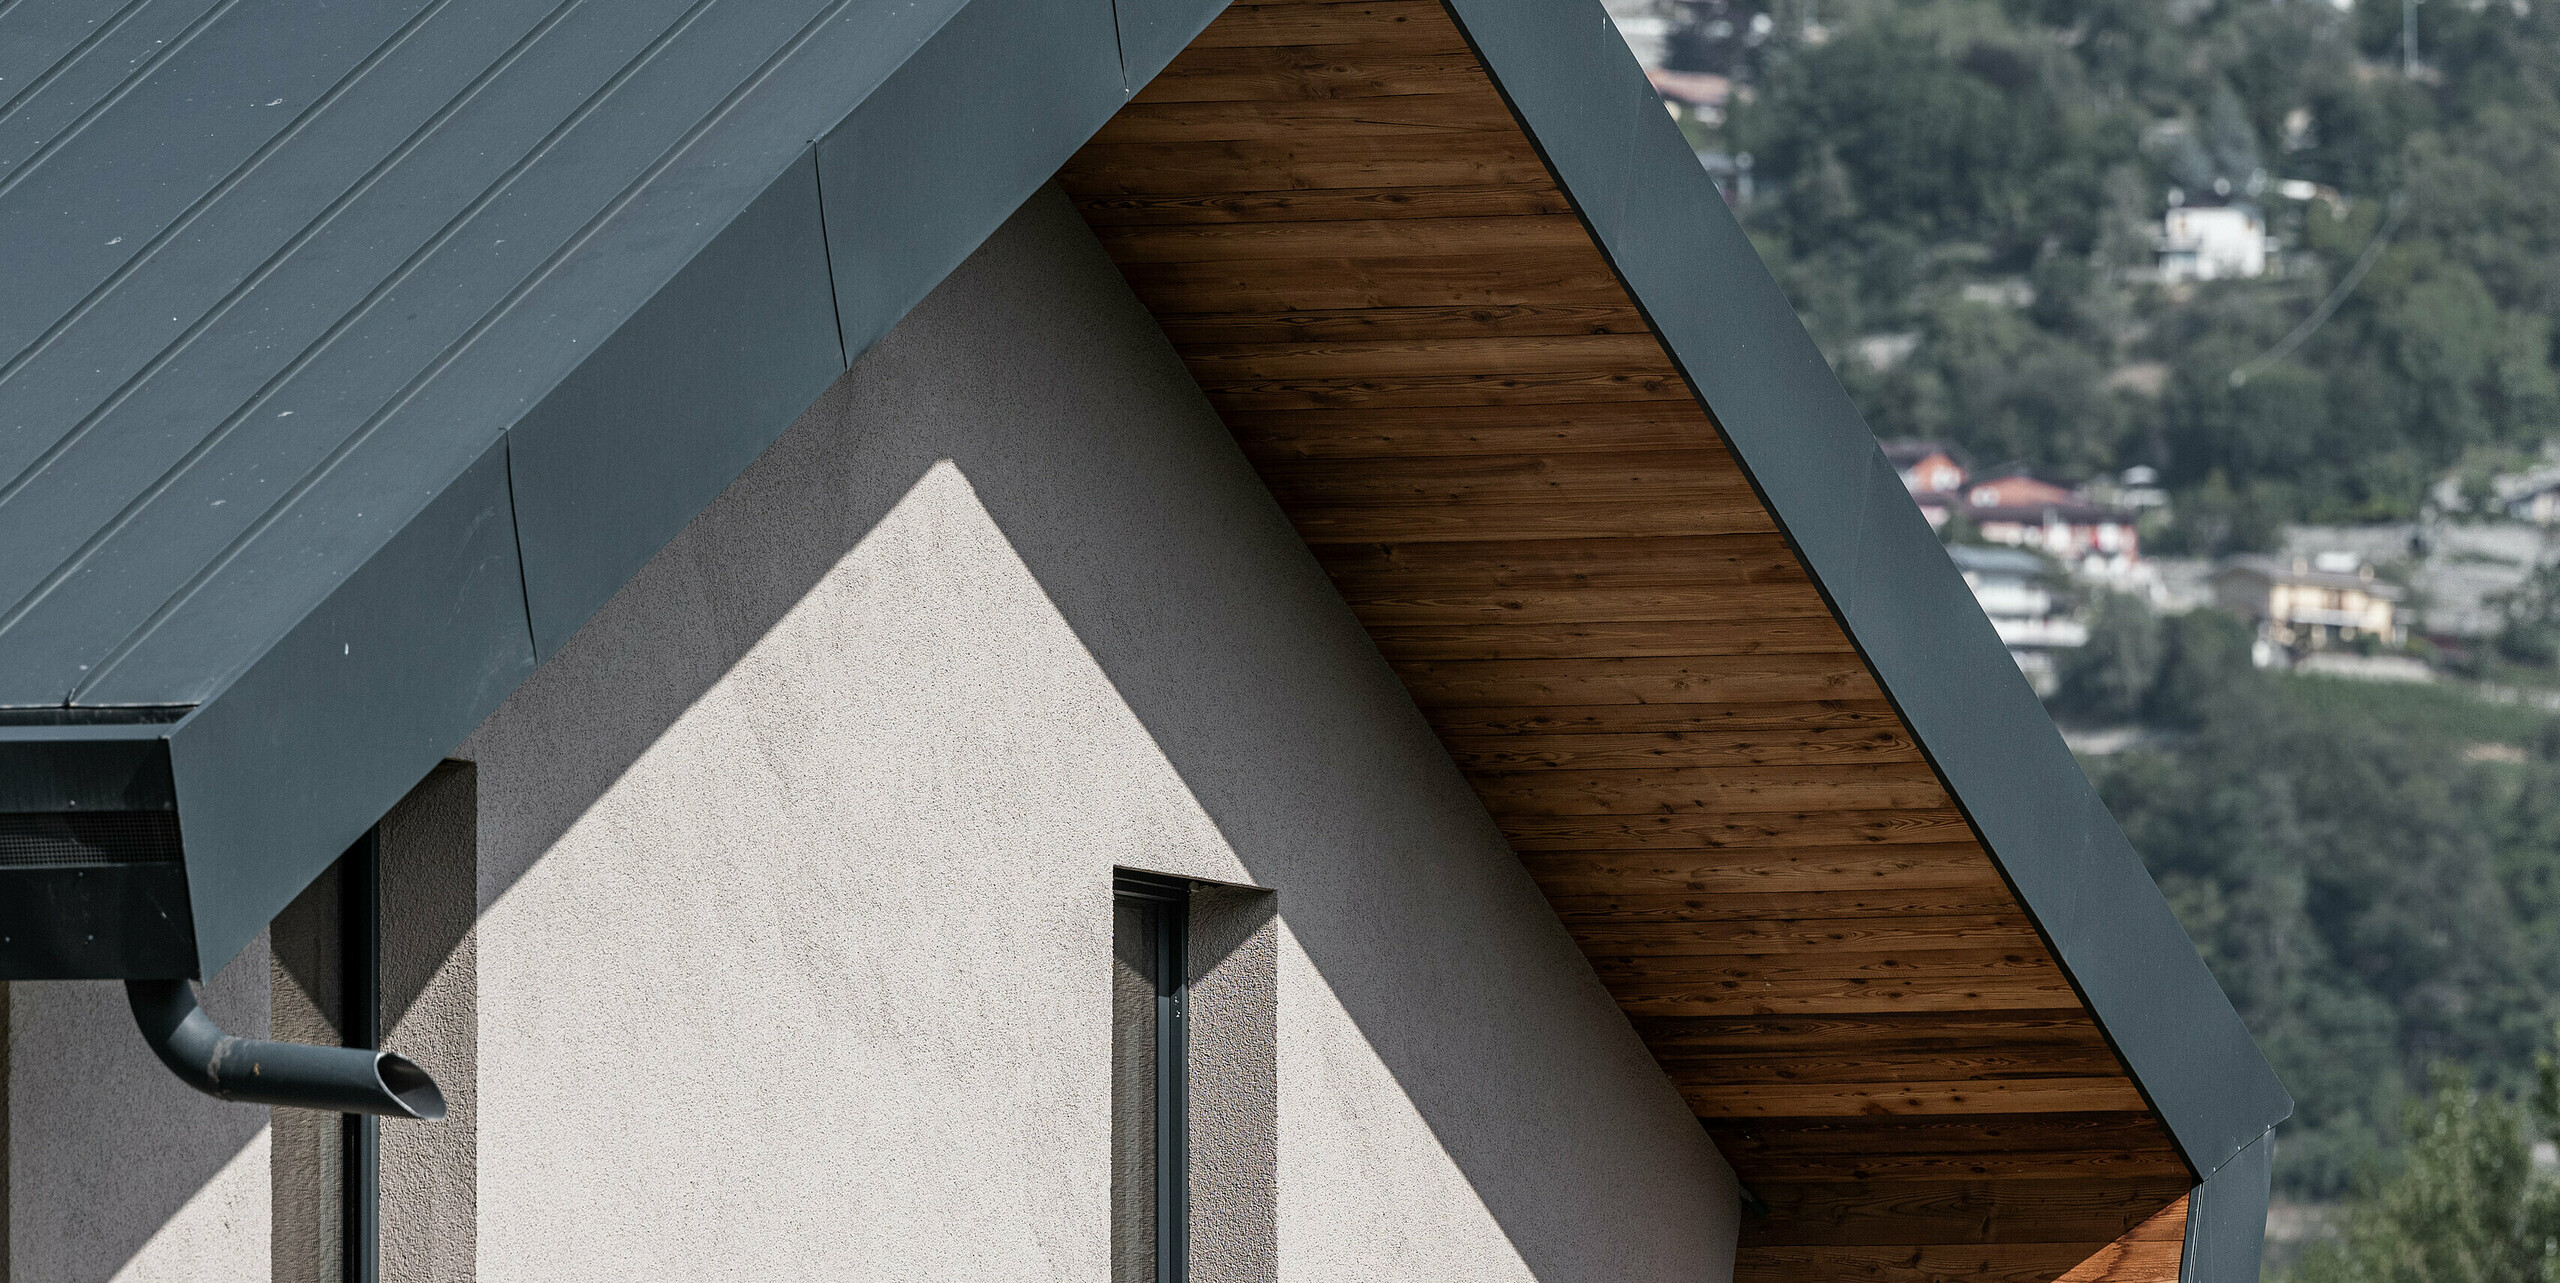 Detailansicht der Villa Tia in Italien, ausgestattet mit einem PREFA Komplettsystem. Zu sehen ist eine PREFALZ Aluminiumverkleidung in der Farbe P.10 Anthrazit, welche die warmen Holzunterkonstruktionen elegant zur Geltung bringt. Die präzise Verarbeitung und das zeitgenössische Design spiegeln die Qualität der PREFA Aluminiumprodukte wider, die für ihre Haltbarkeit und Ästhetik bekannt sind.